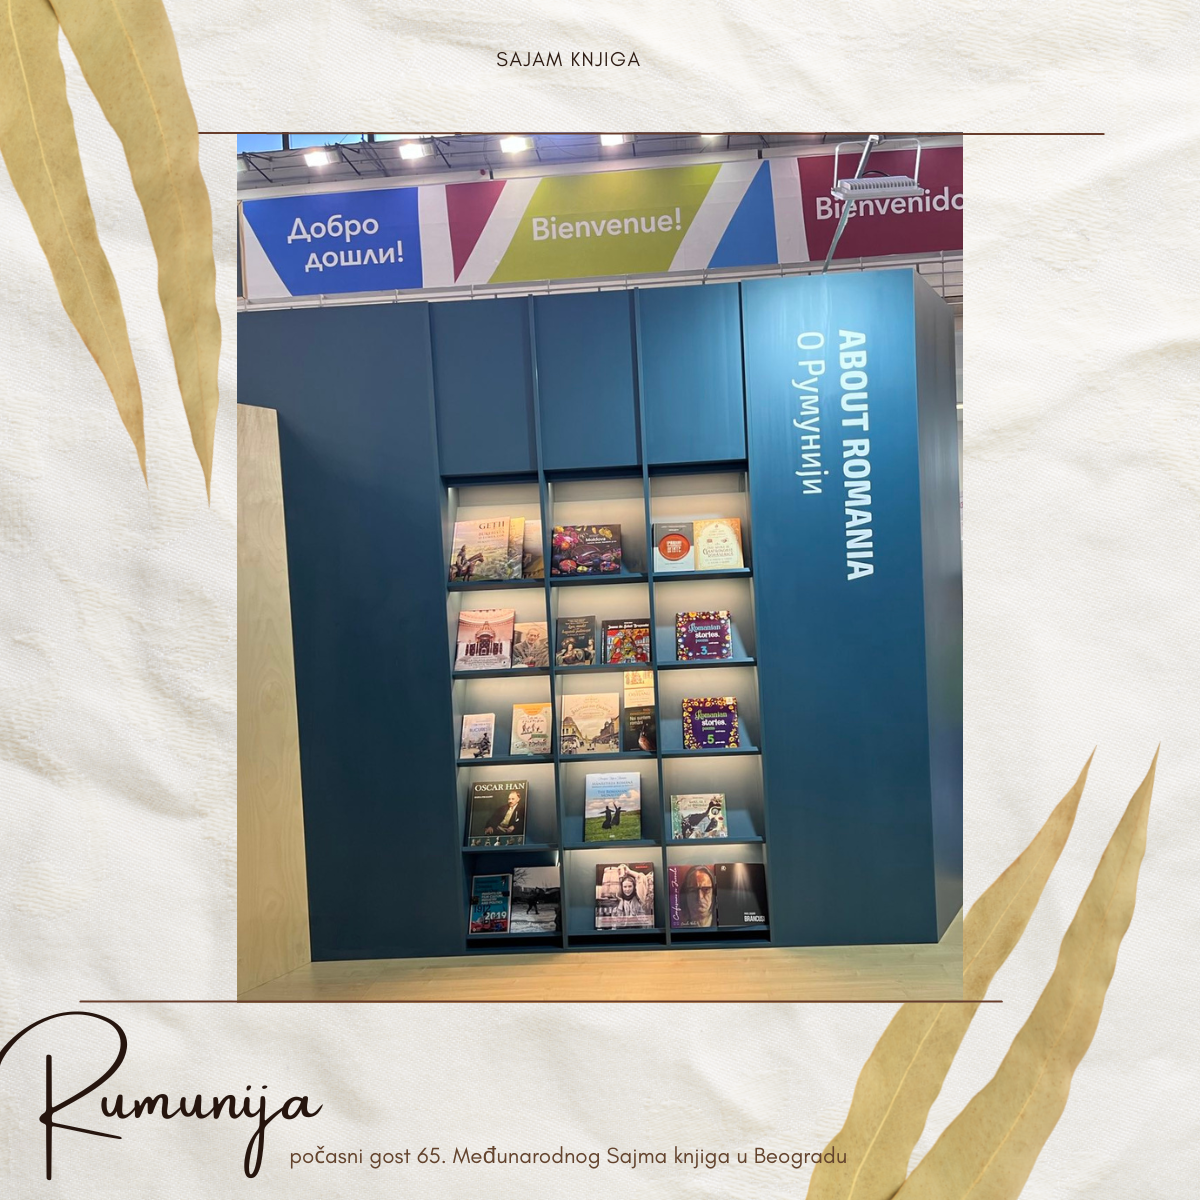 Rumunija je počasni gost Sajma knjiga u Beogradu / foto: canva